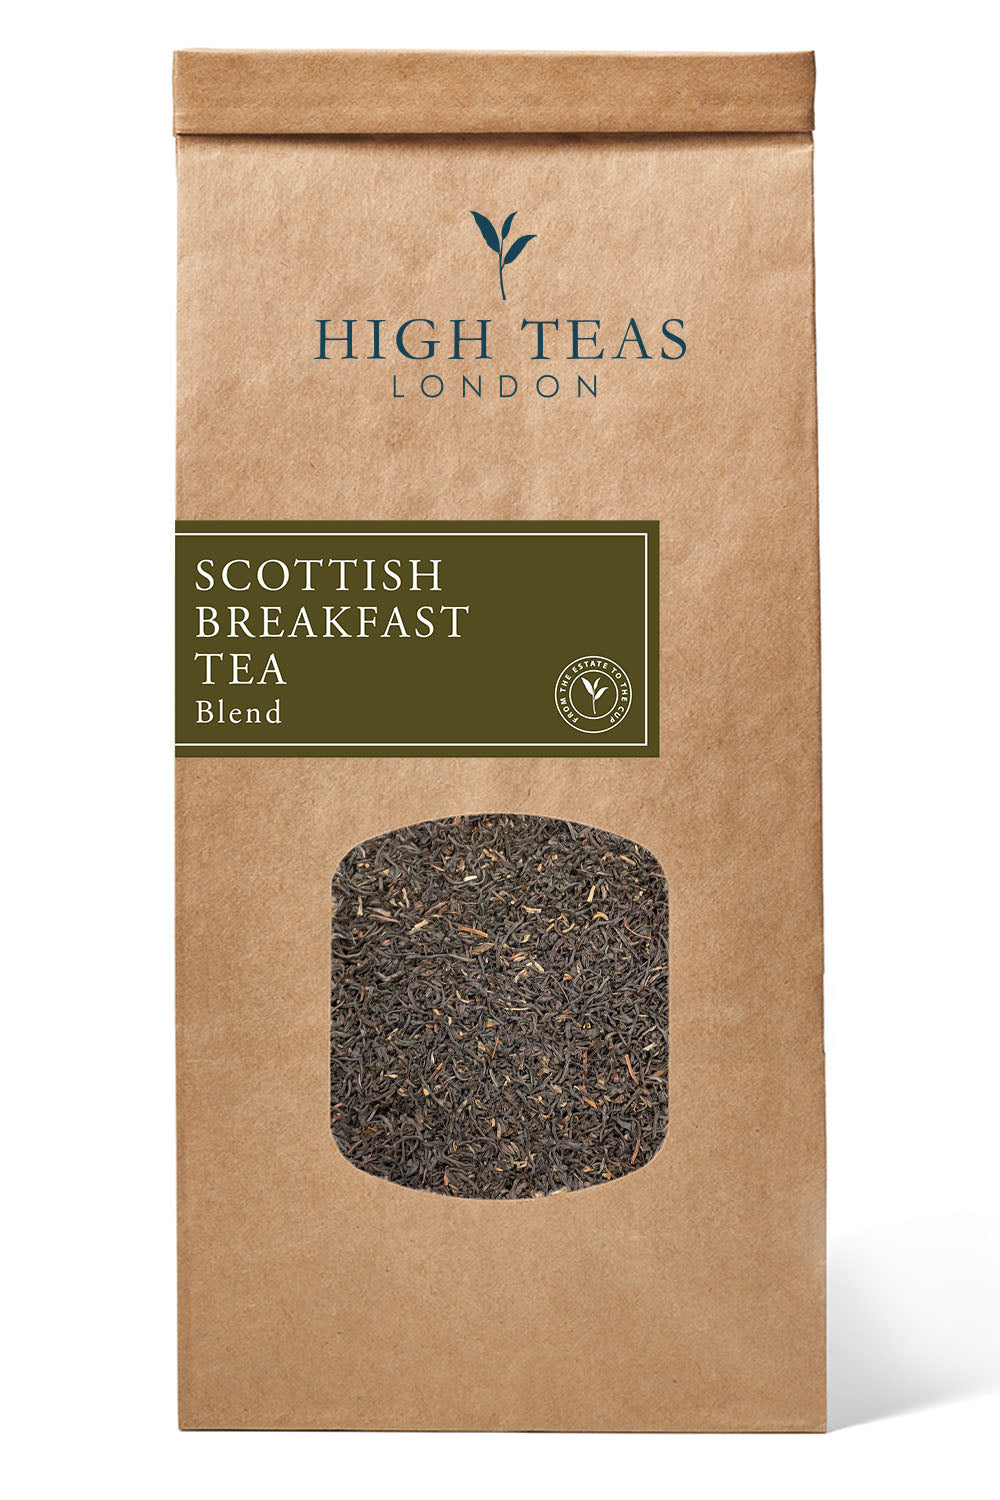 Scottish Breakfast Tea-250g-Loose Leaf Tea-High Teas